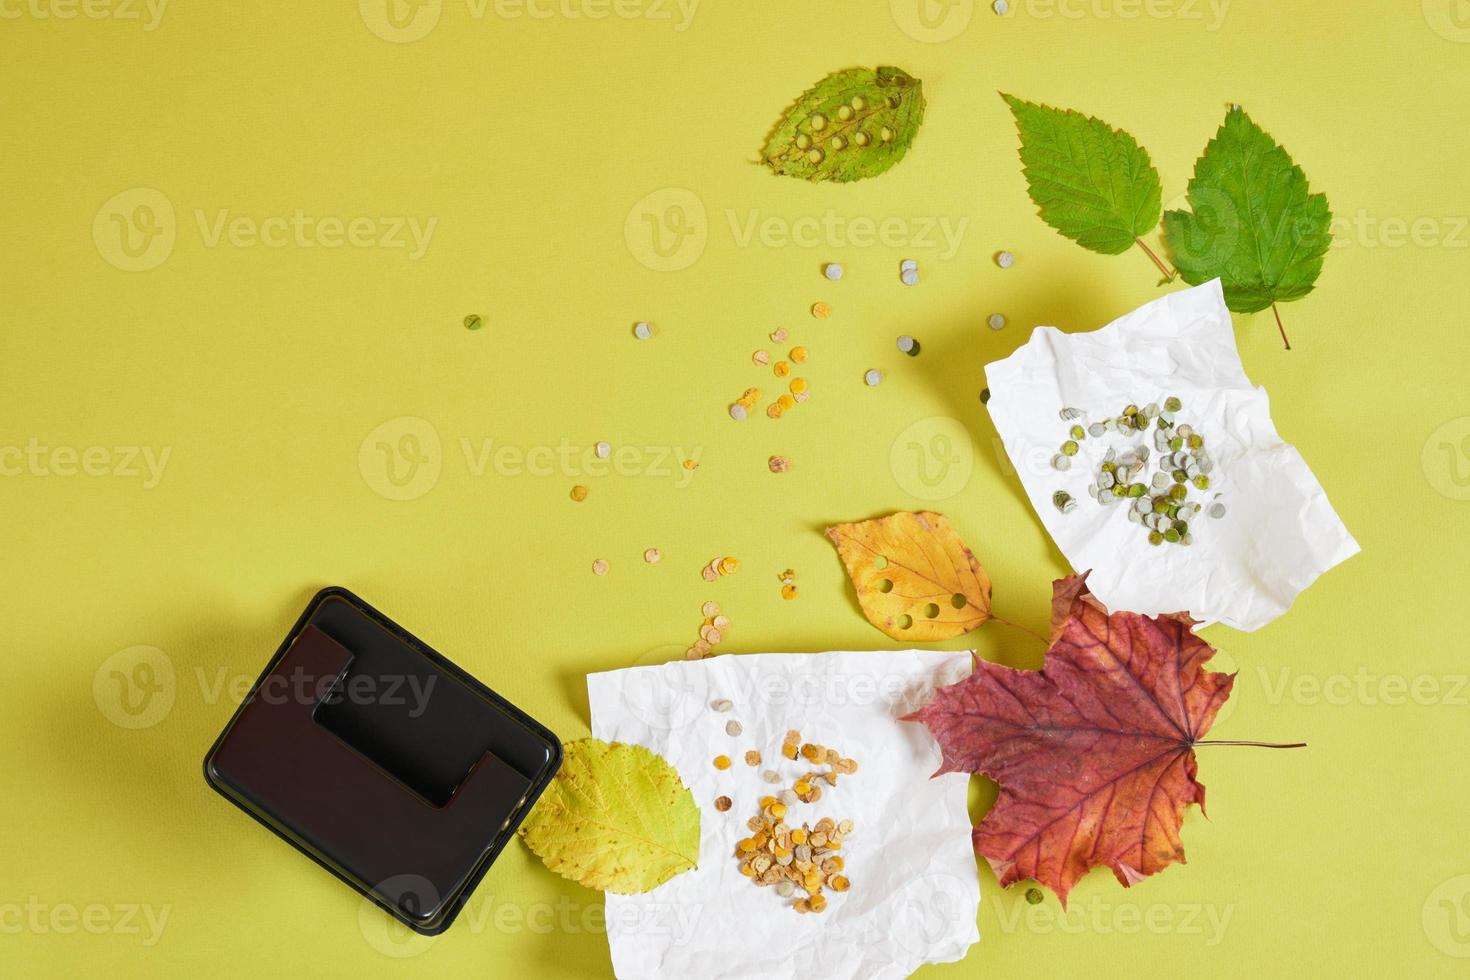 perforatrice, feuilles d'automne et confettis pour les vacances, confettis écologiques zéro déchet à base de feuilles séchées photo